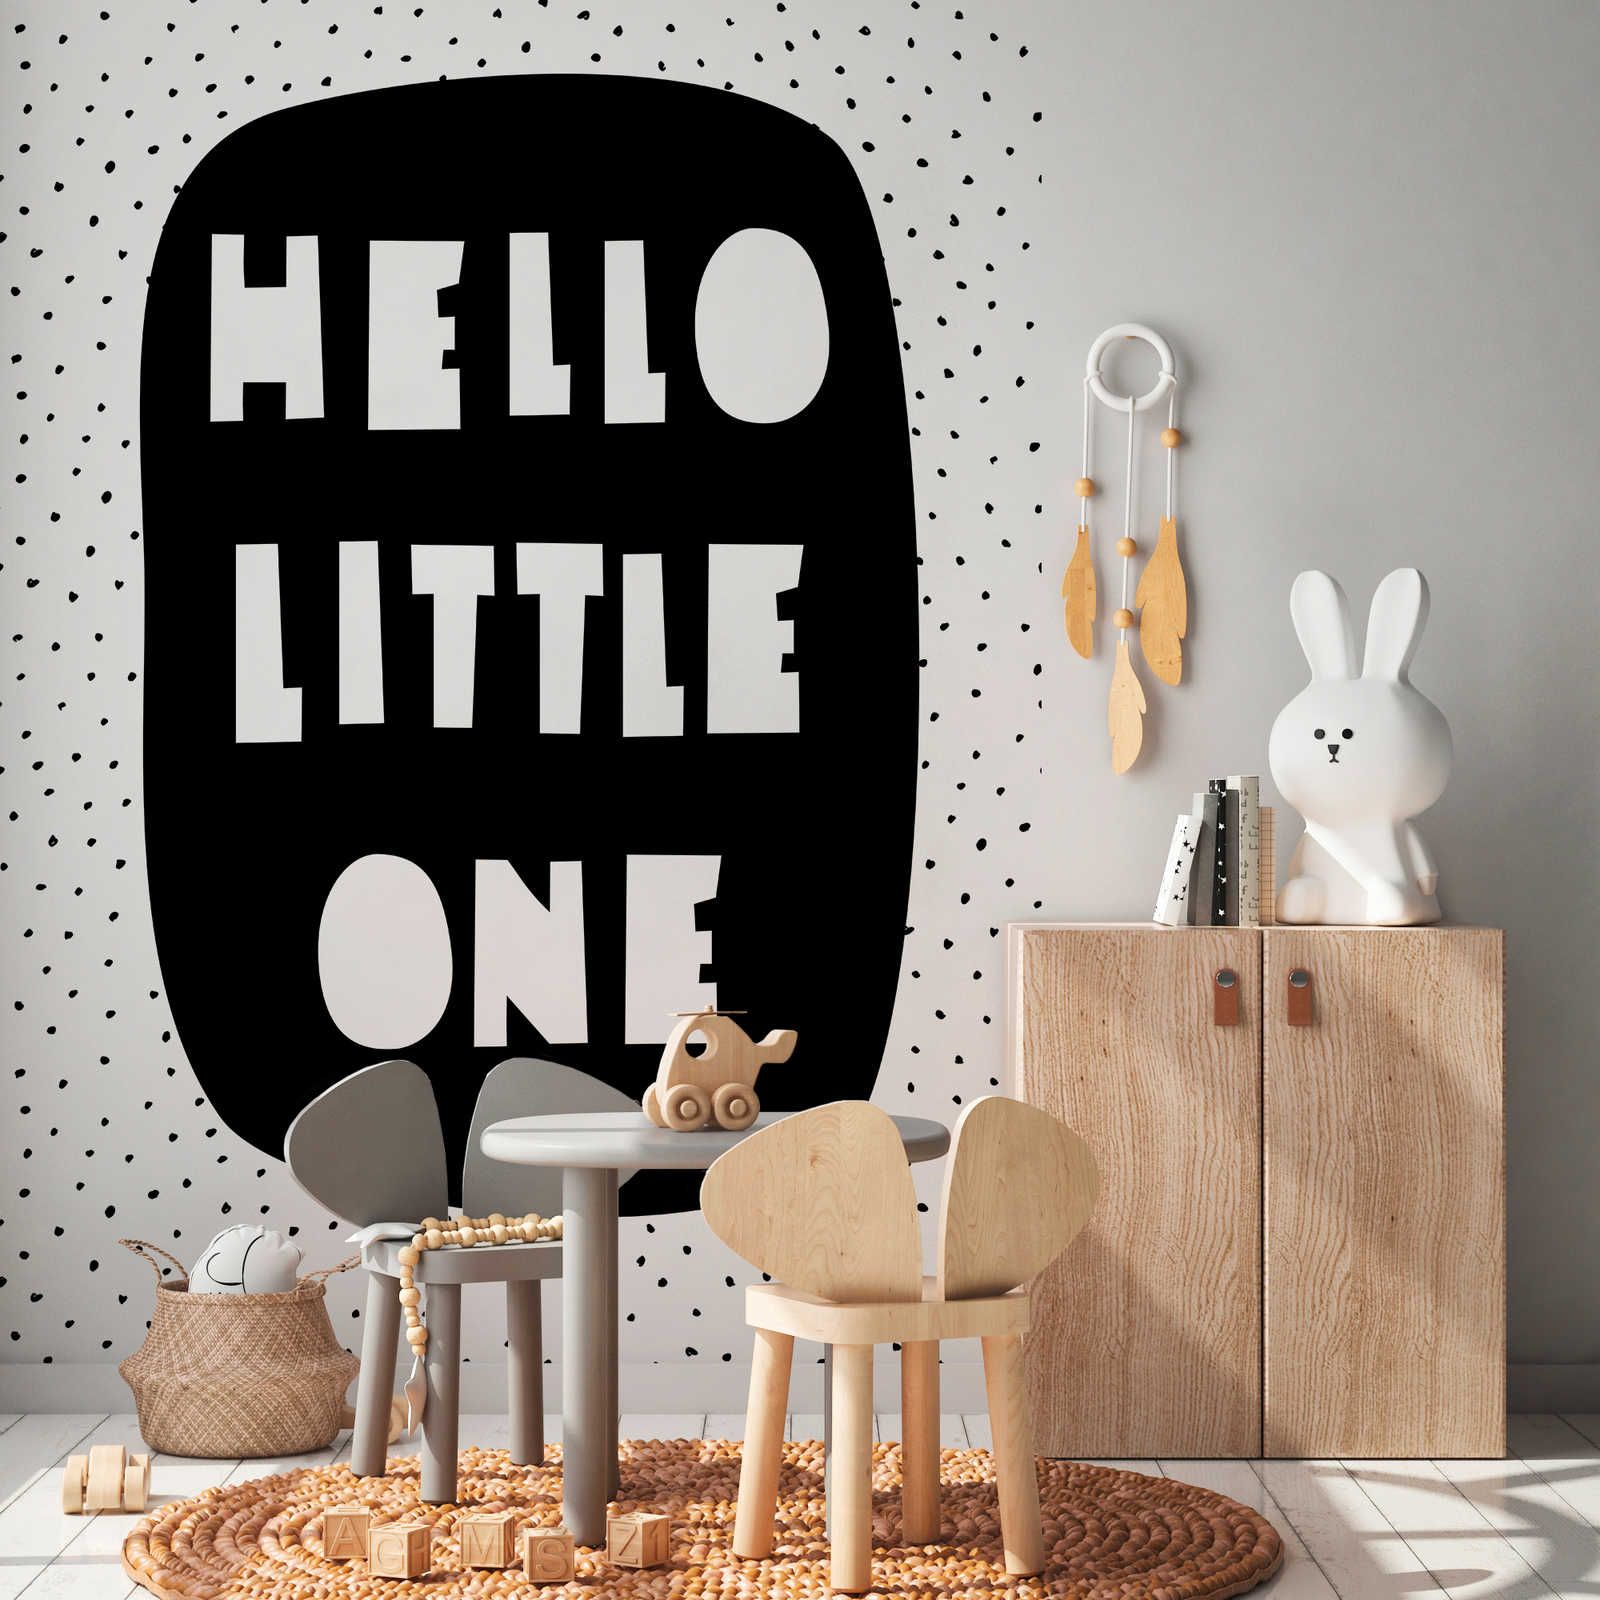 Fotomural para habitación infantil con inscripción "Hello Little One" - Material sin tejer liso y ligeramente brillante
